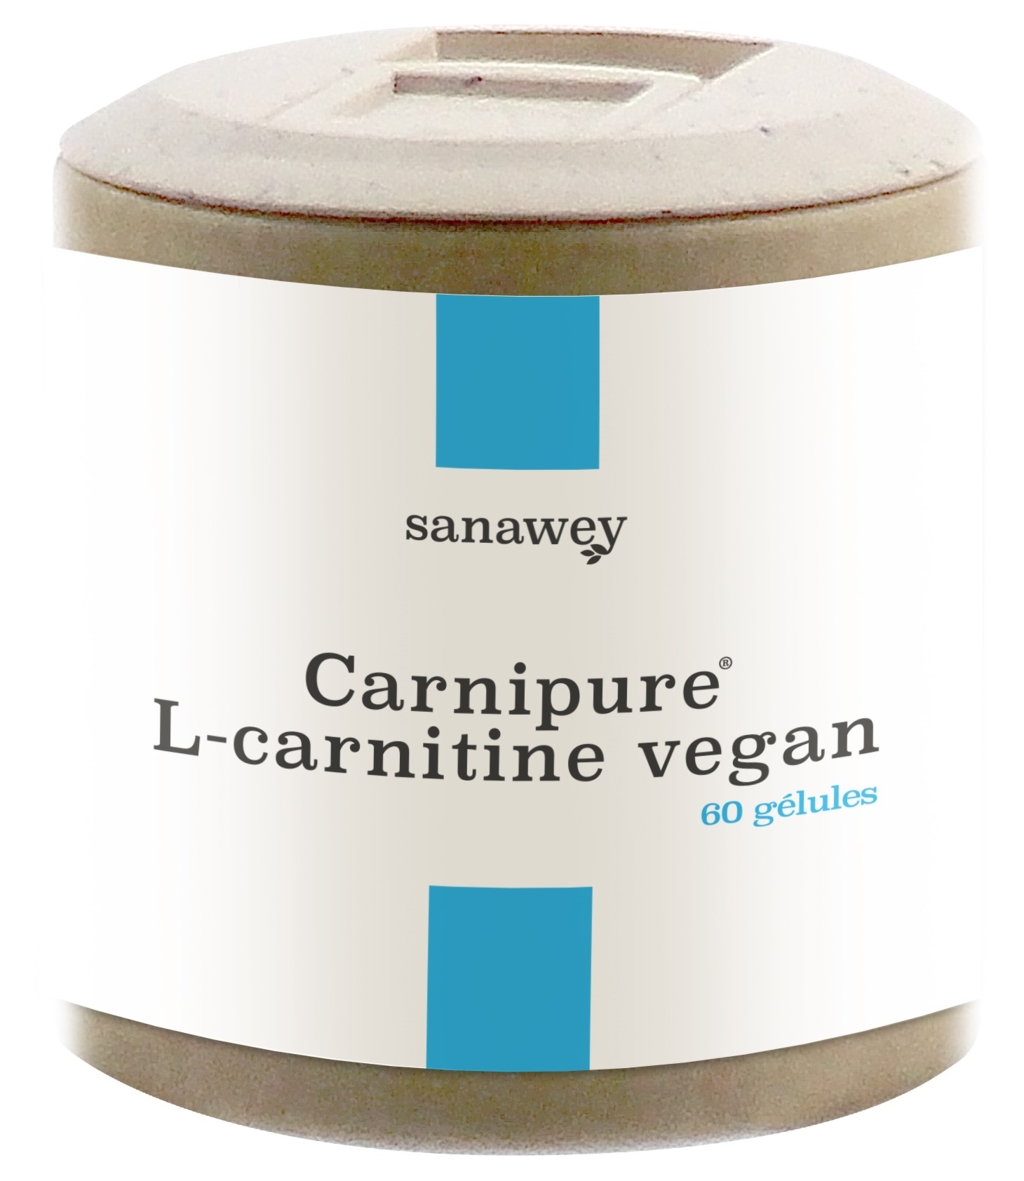 Carnipure® L-carnitine vegan